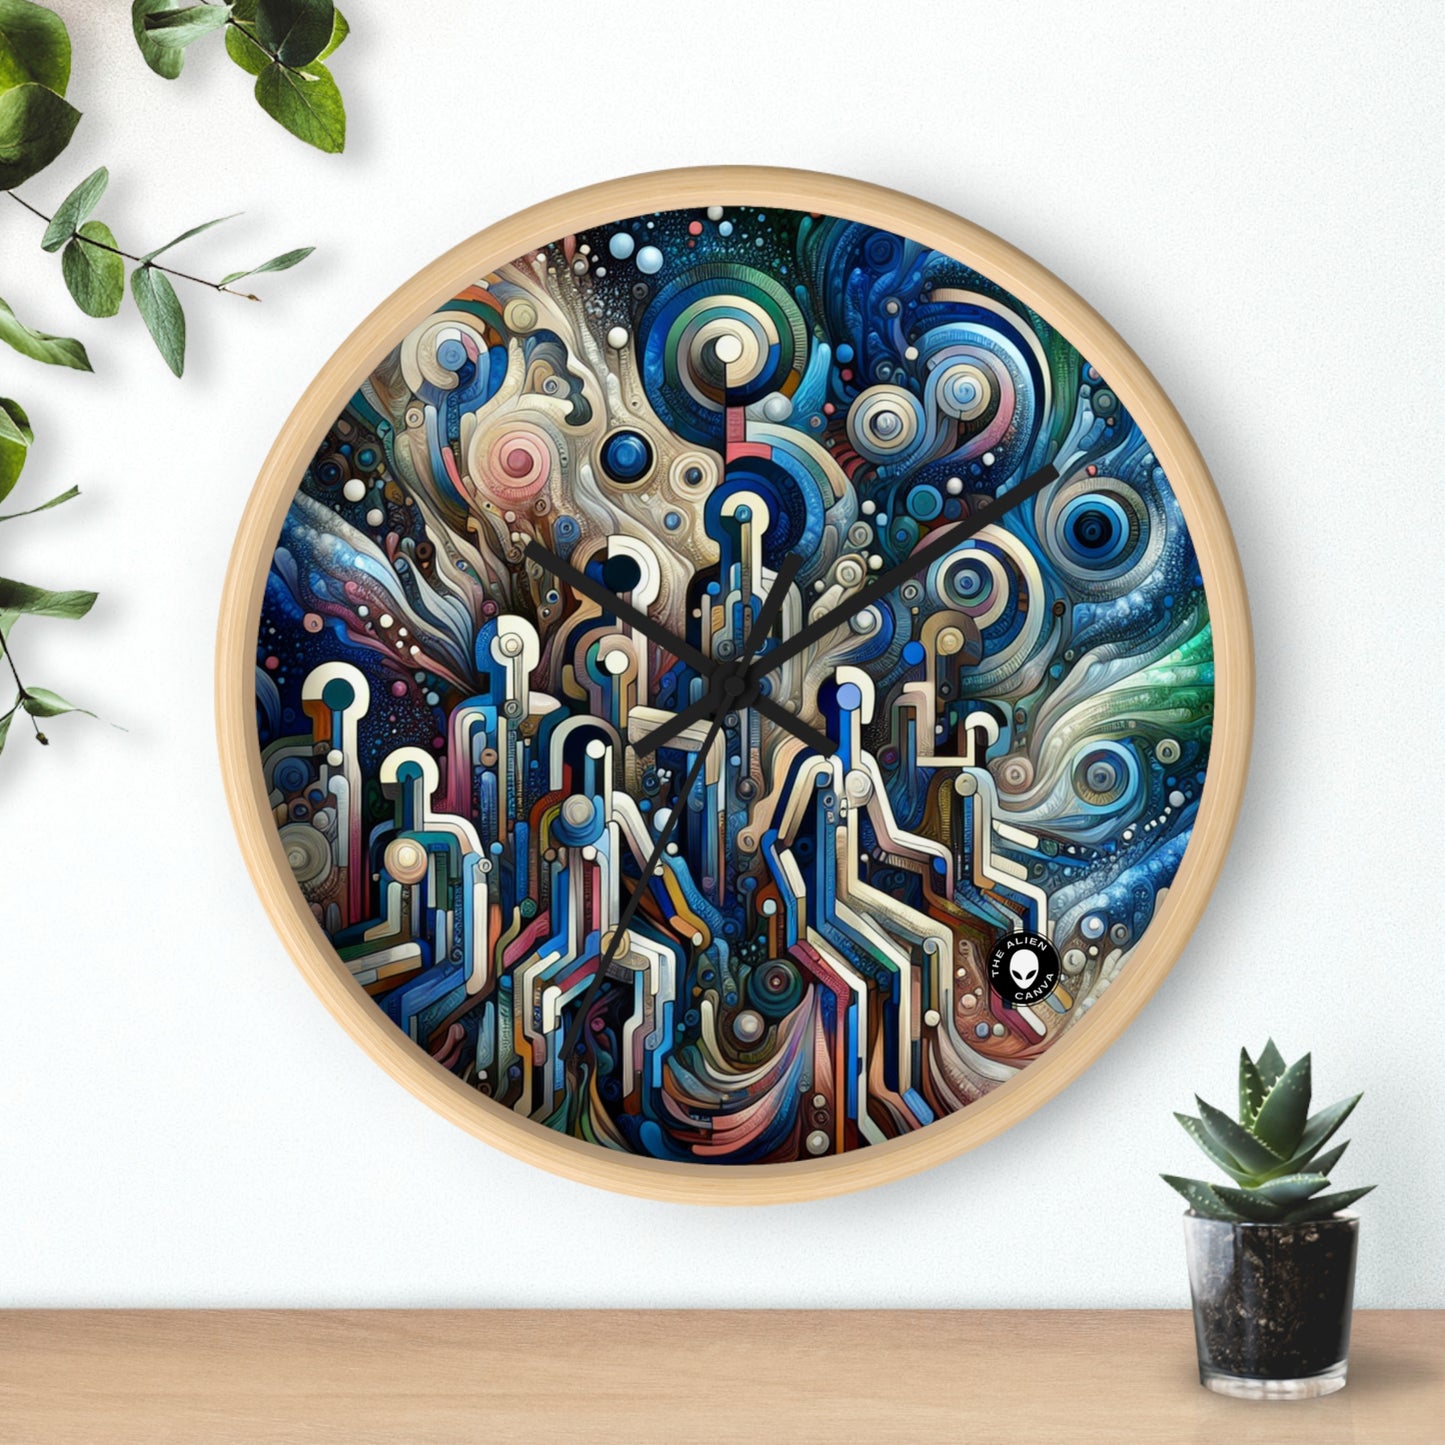 "Elegancia divina: salón de baile de dioses y diosas inspirado en el manierismo" - The Alien Wall Clock Manierism